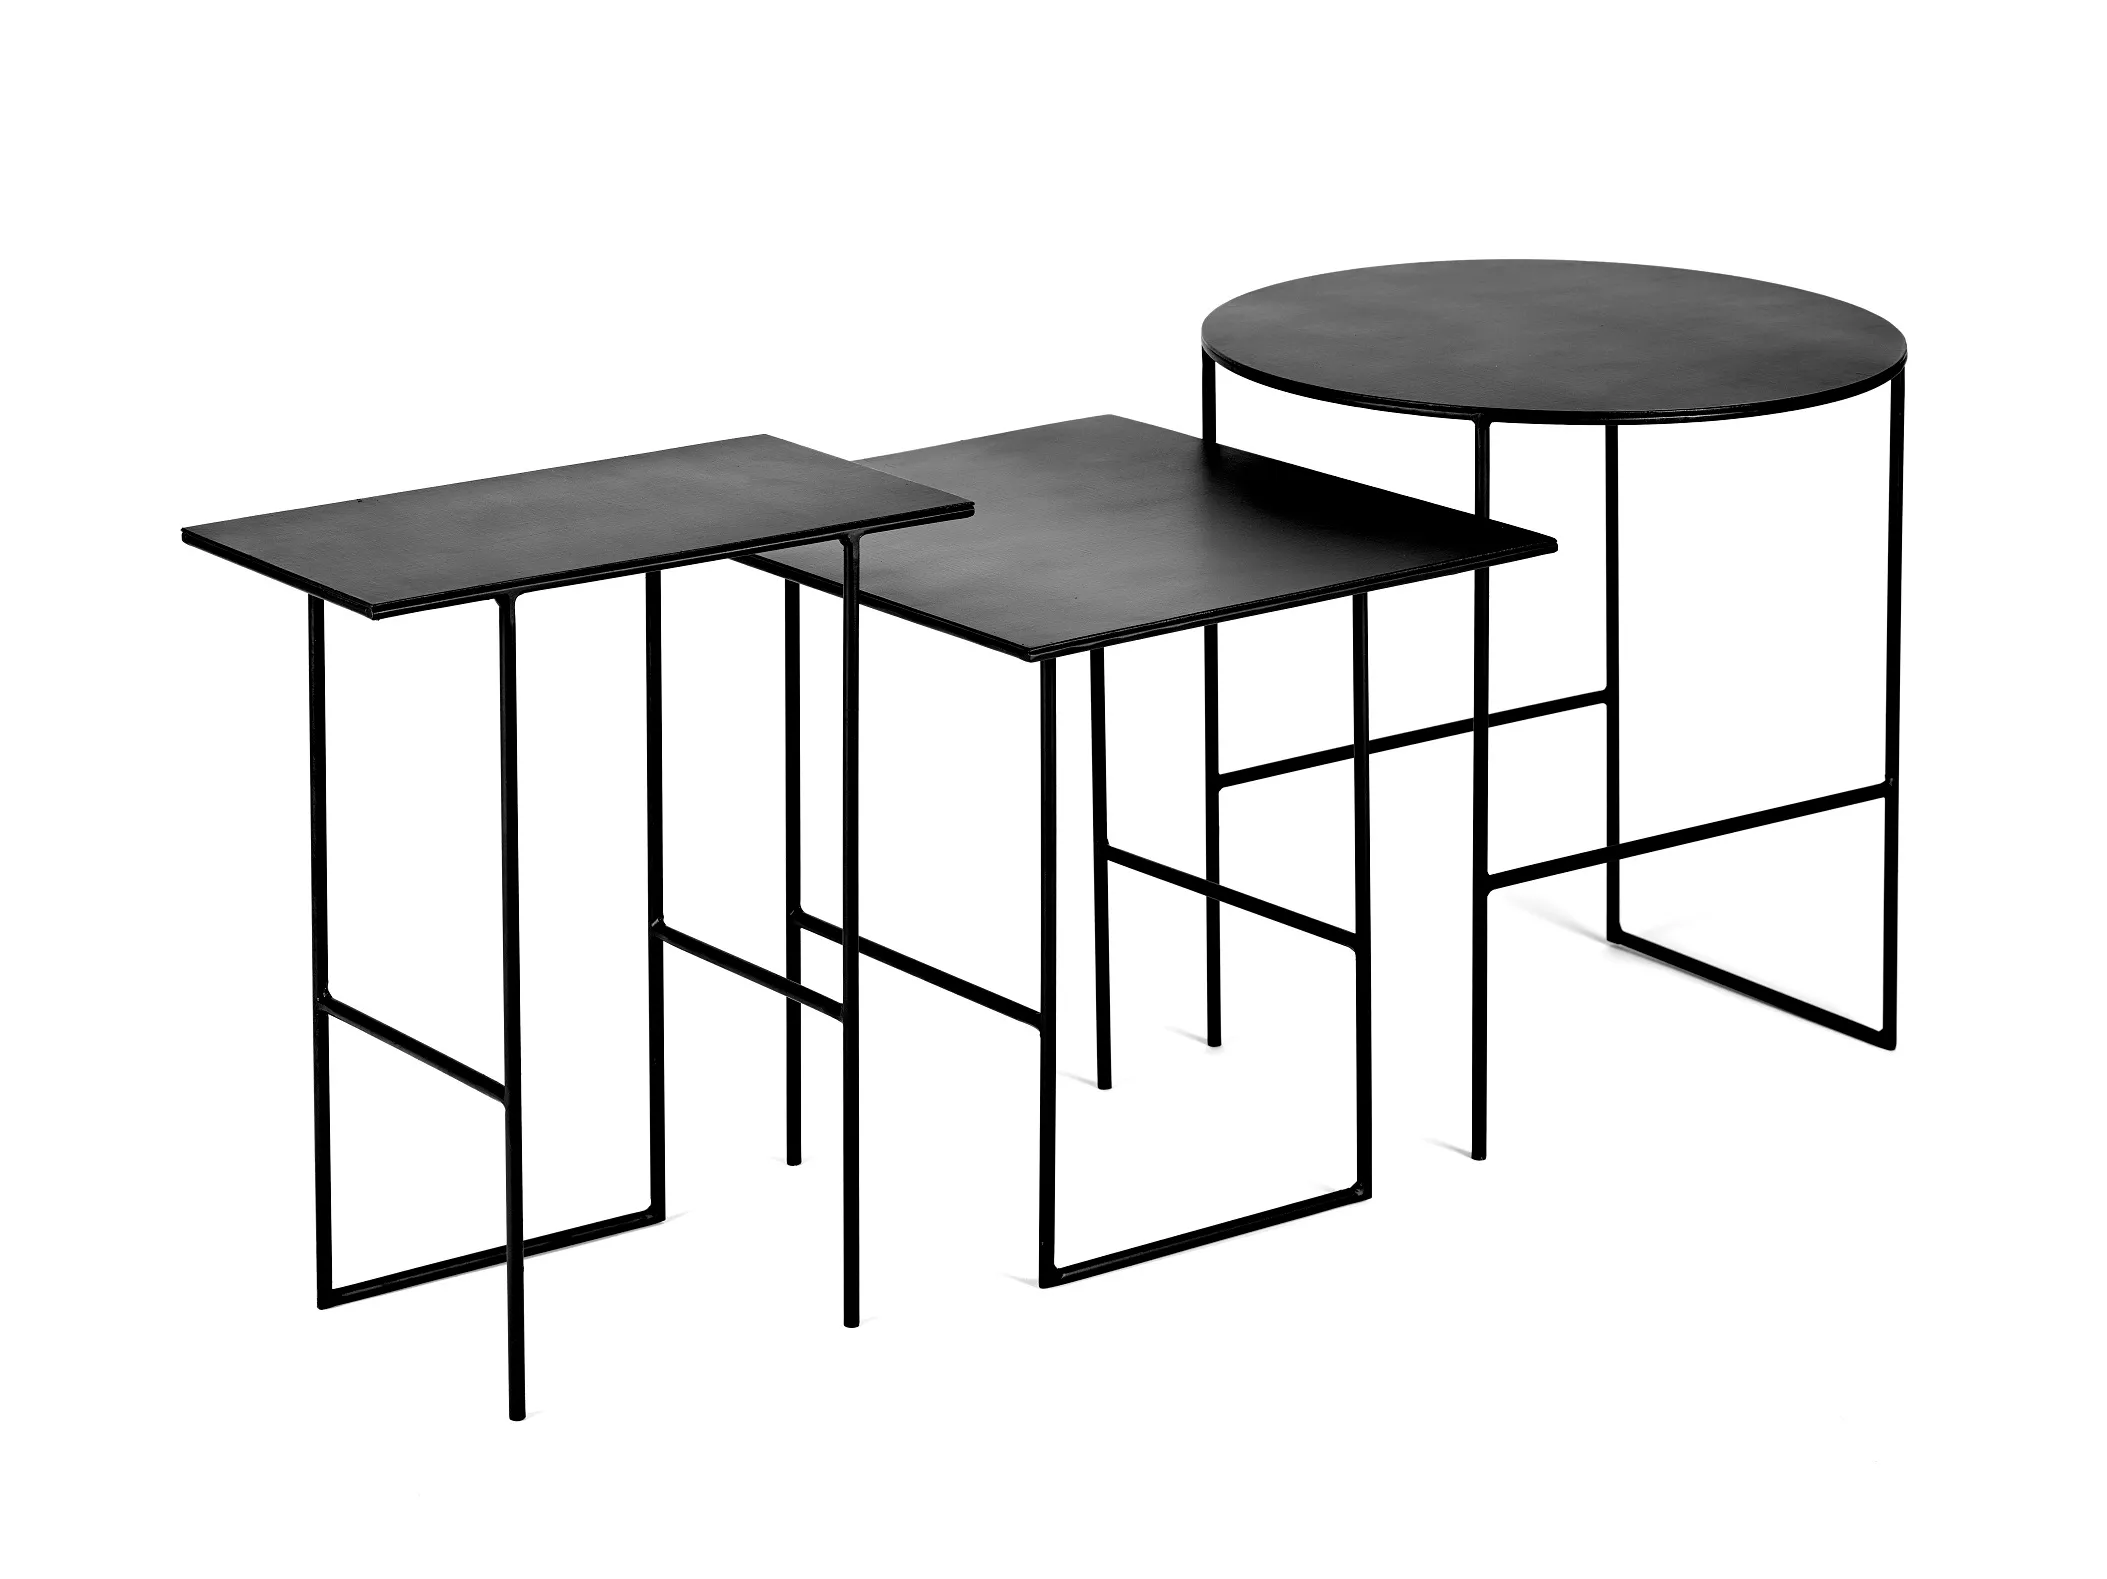 Side Table Cico M Black L 38 W 35 H 35.5CM Antonino Sciortino by Serax